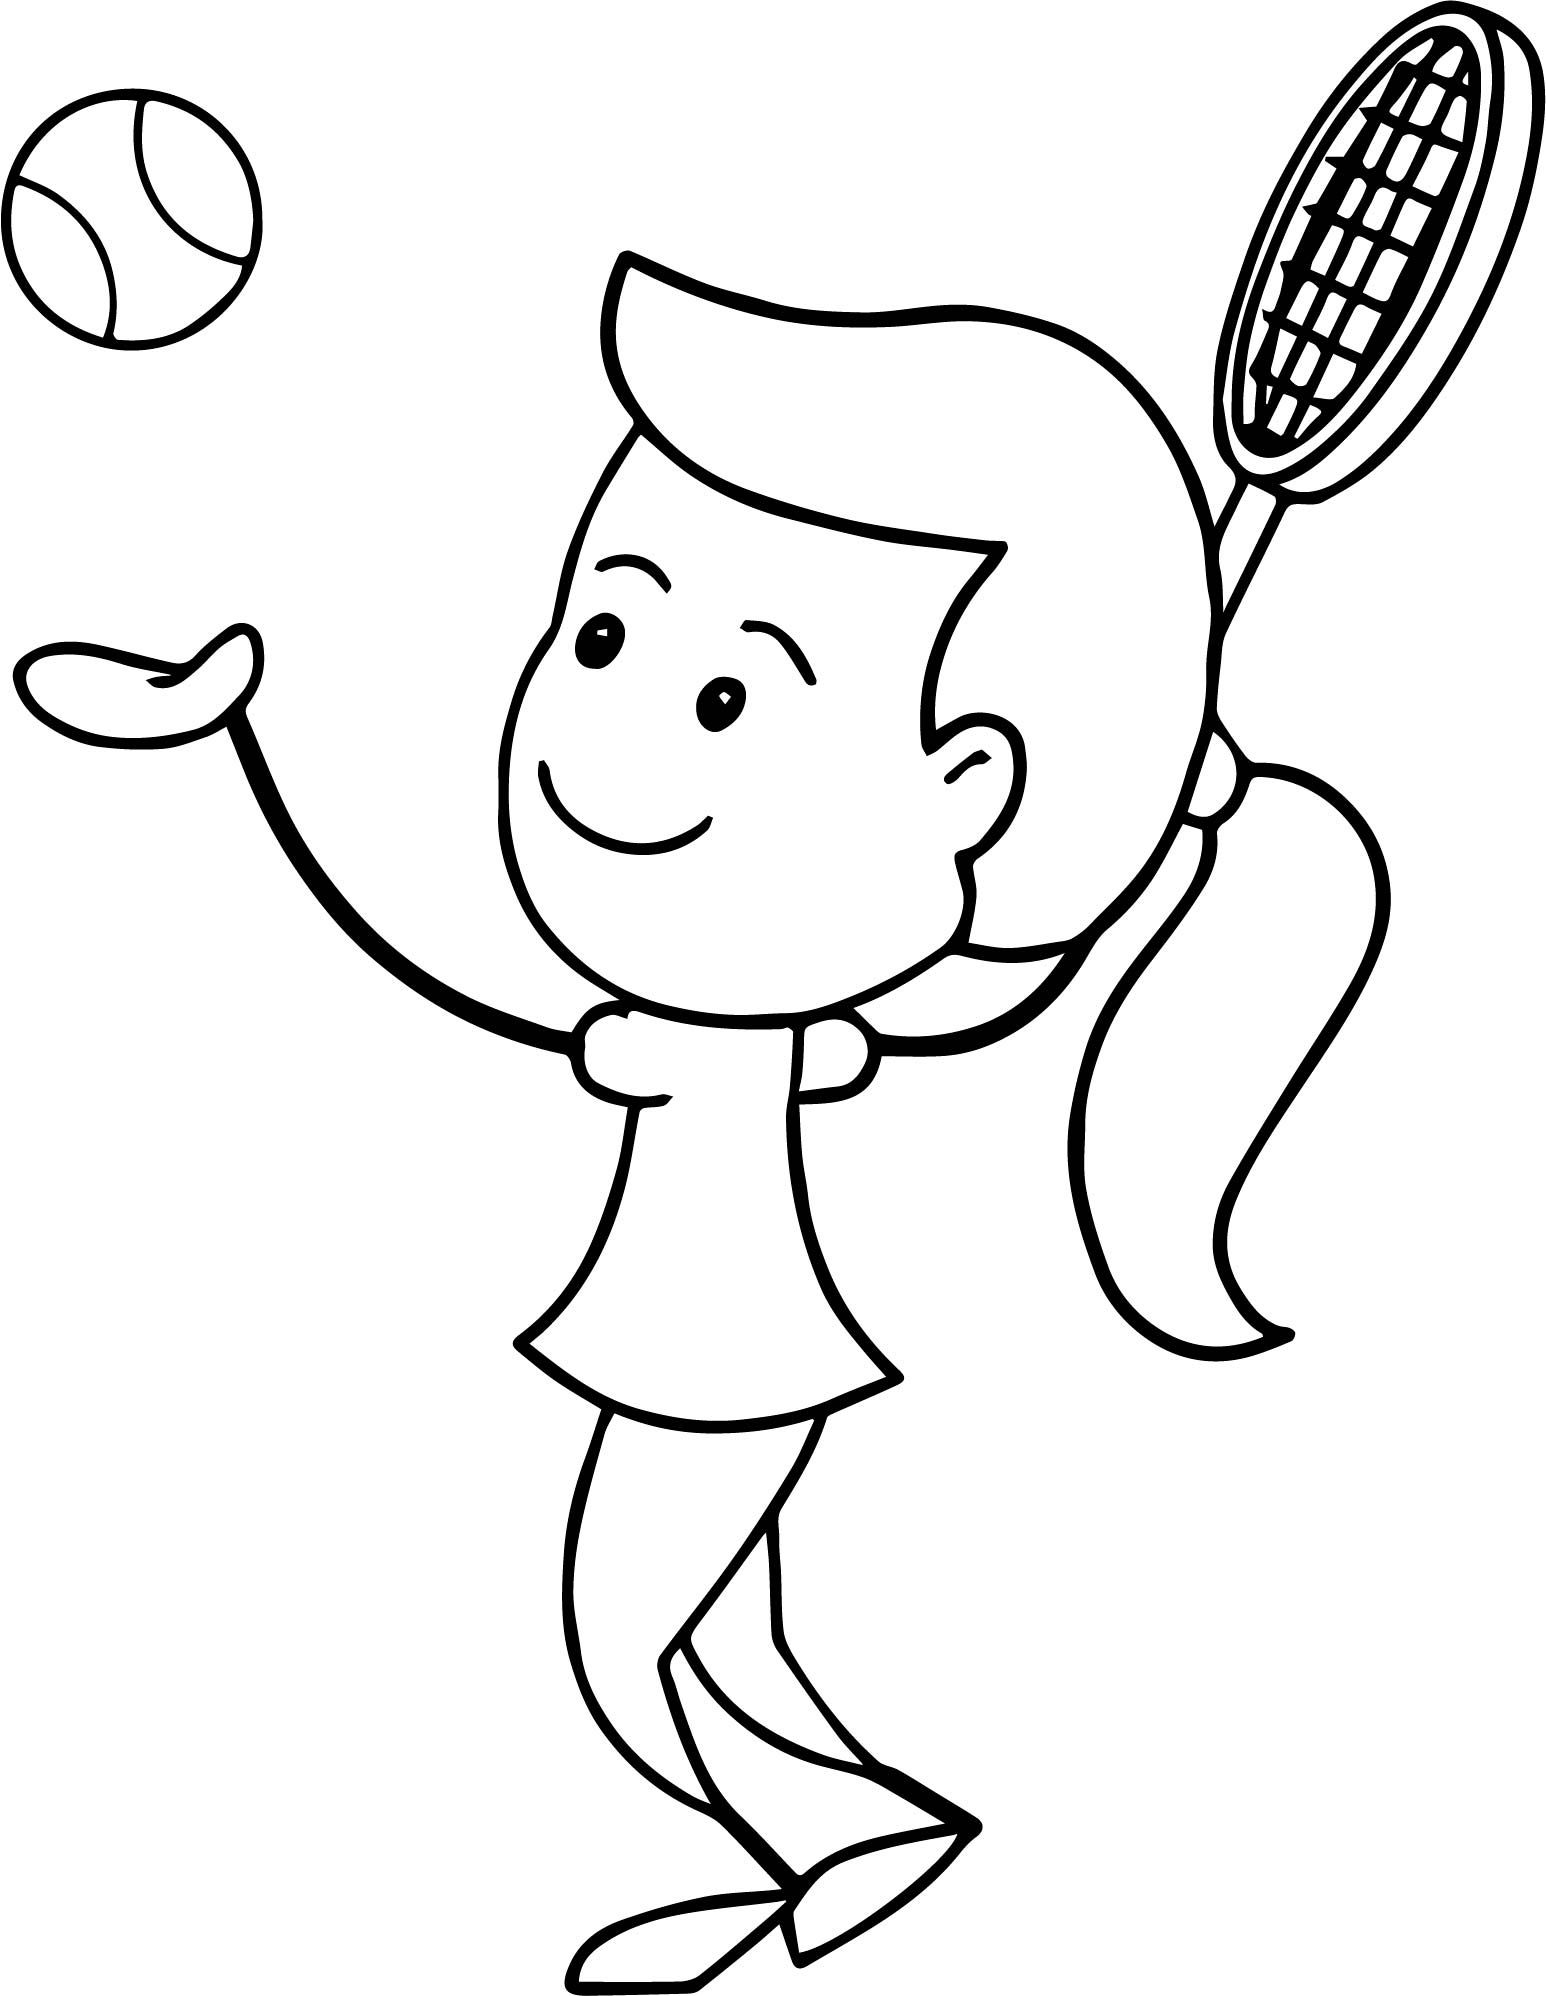 nina jugando al tenis dibujos para colorear - niña jugando al tenis dibujos para colorear